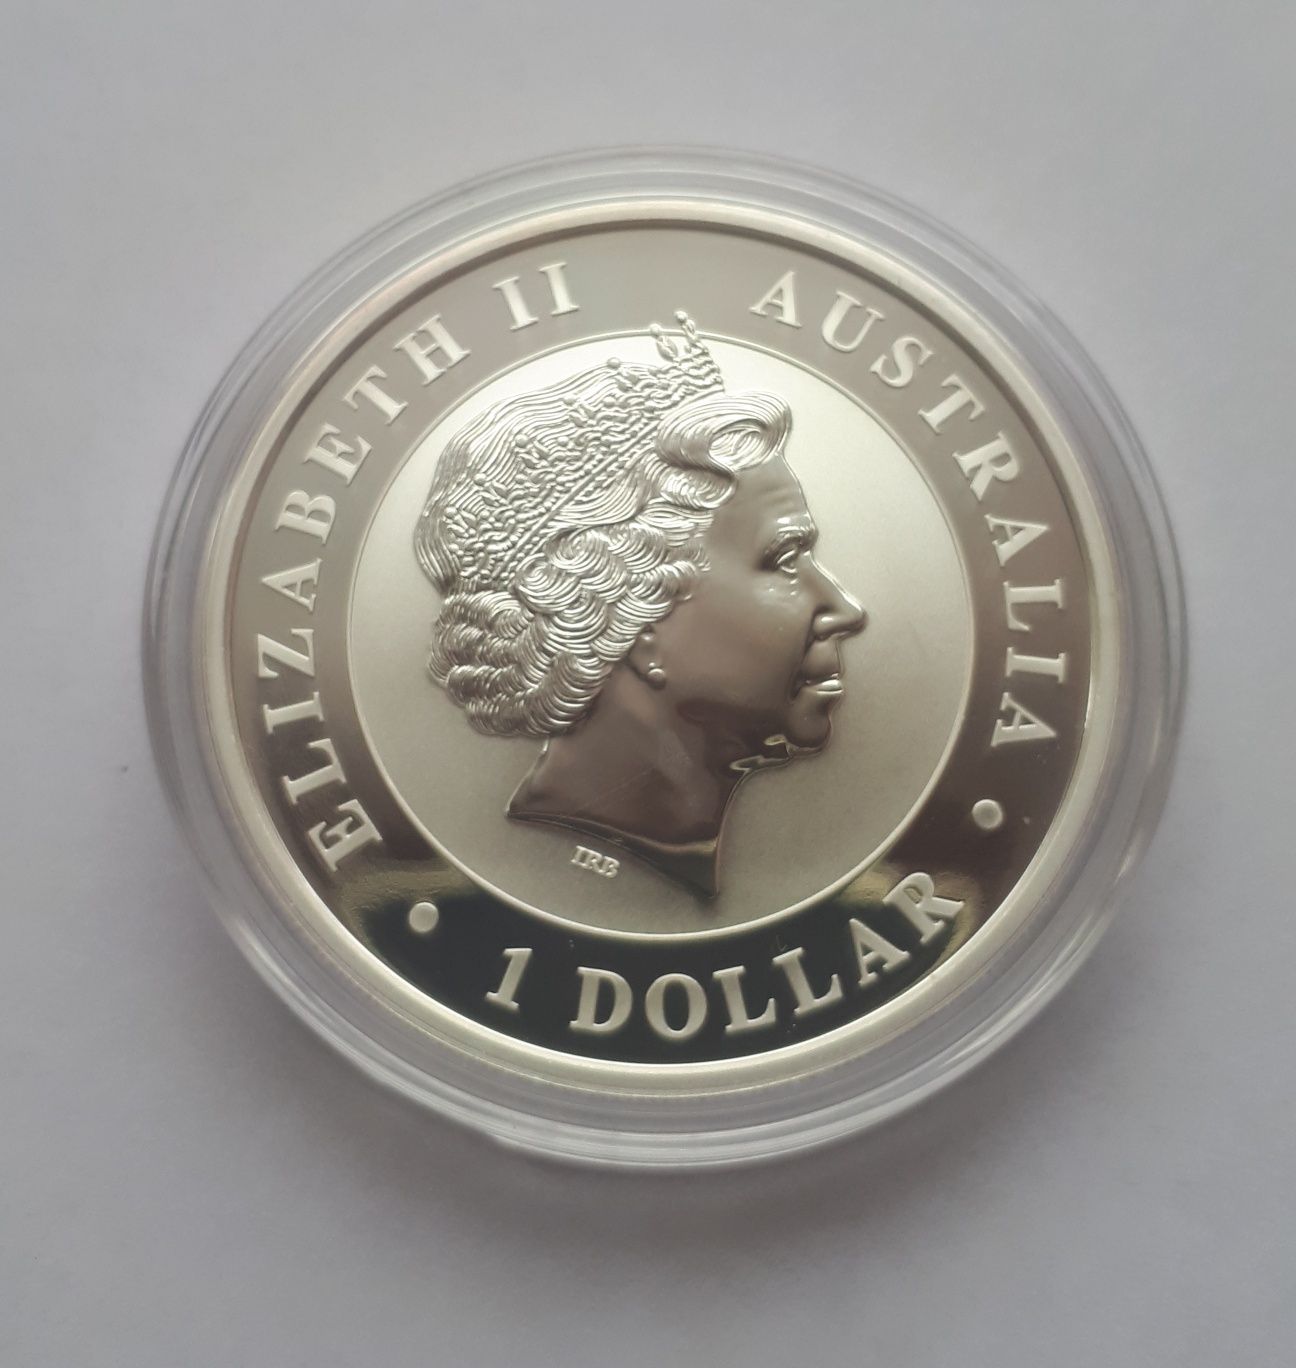 Інвестиційна монета серії "Кукабара" рік 2017, срібло 999 вага 1 oz